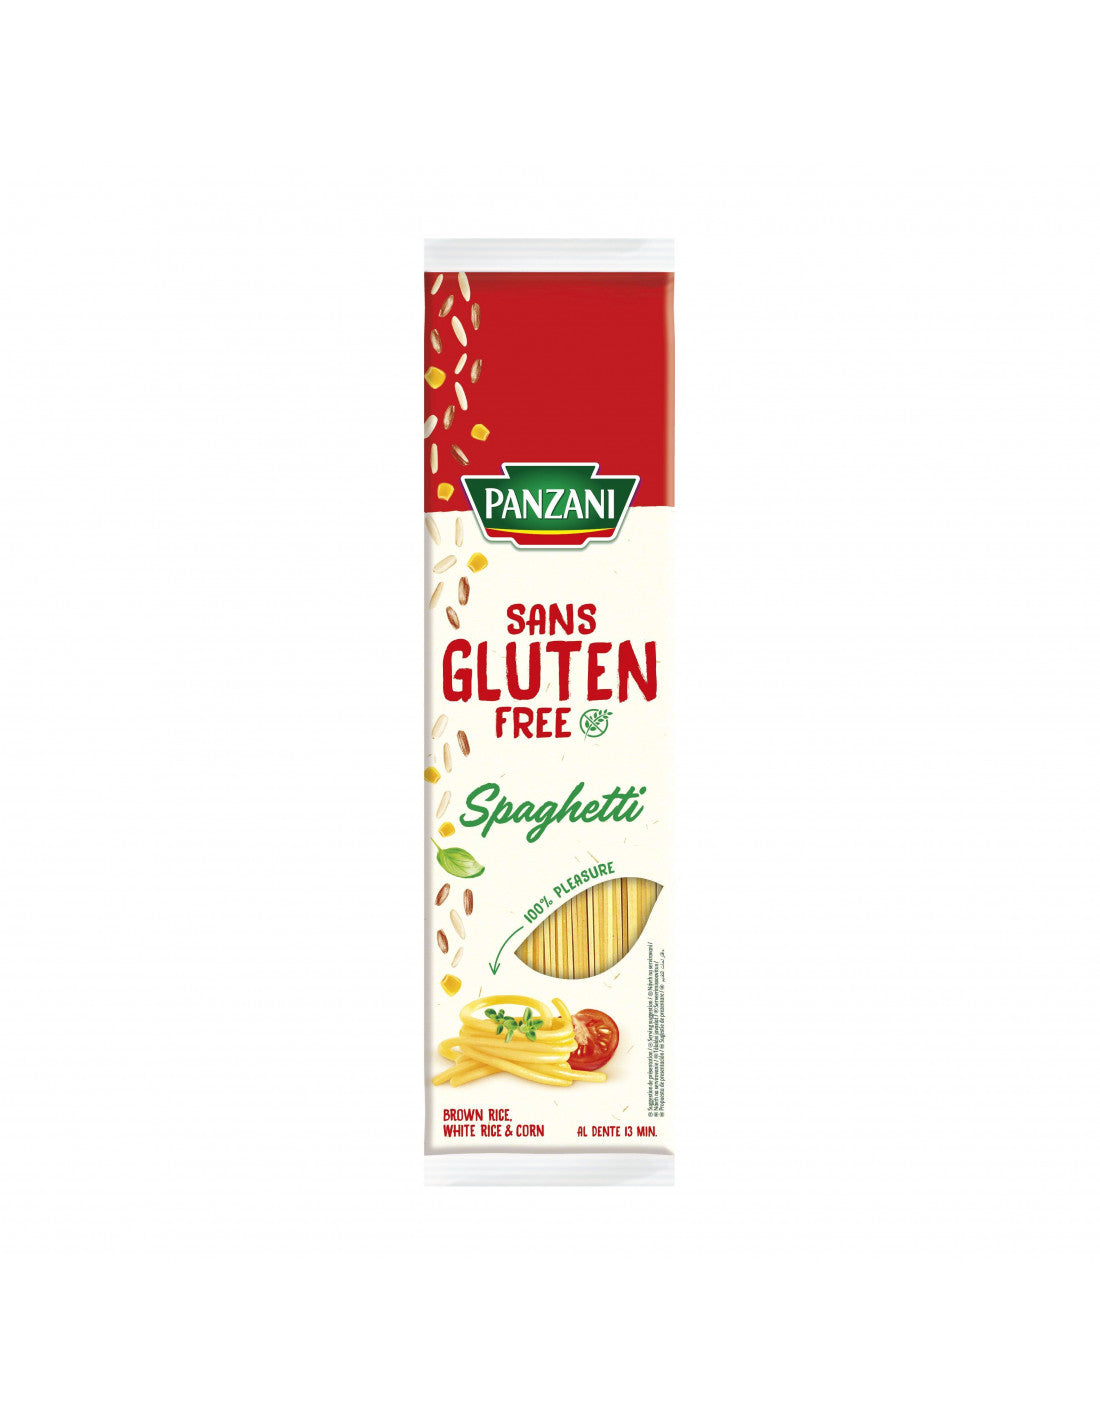 Panzani Spaghetti gluten free 400g -C82